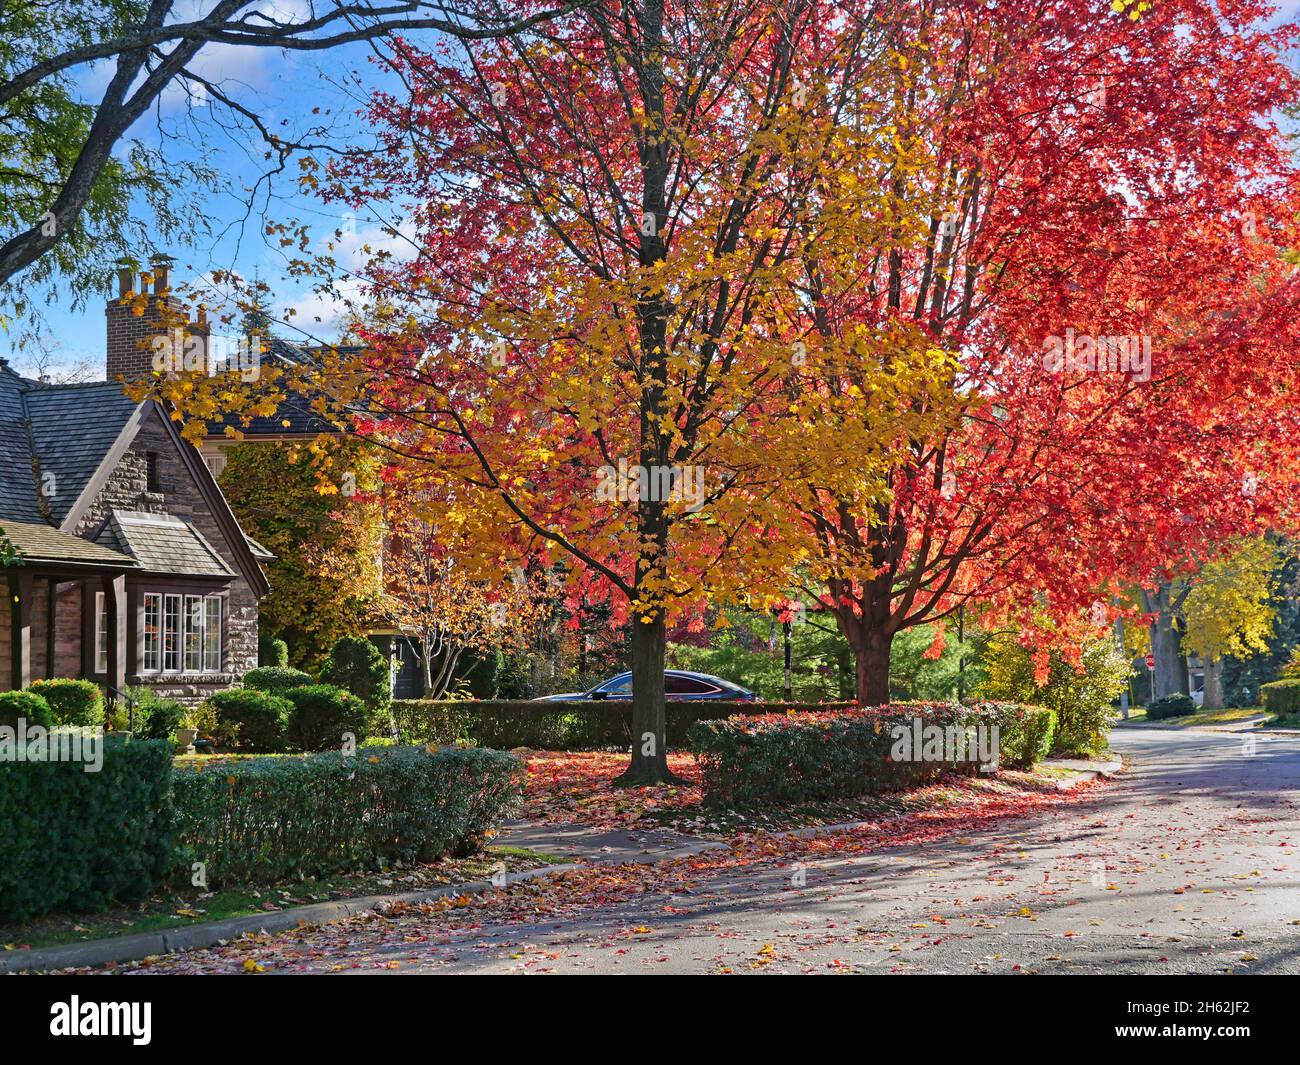 Rue résidentielle suburbaine avec des érables aux couleurs éclatantes de l'automne Banque D'Images